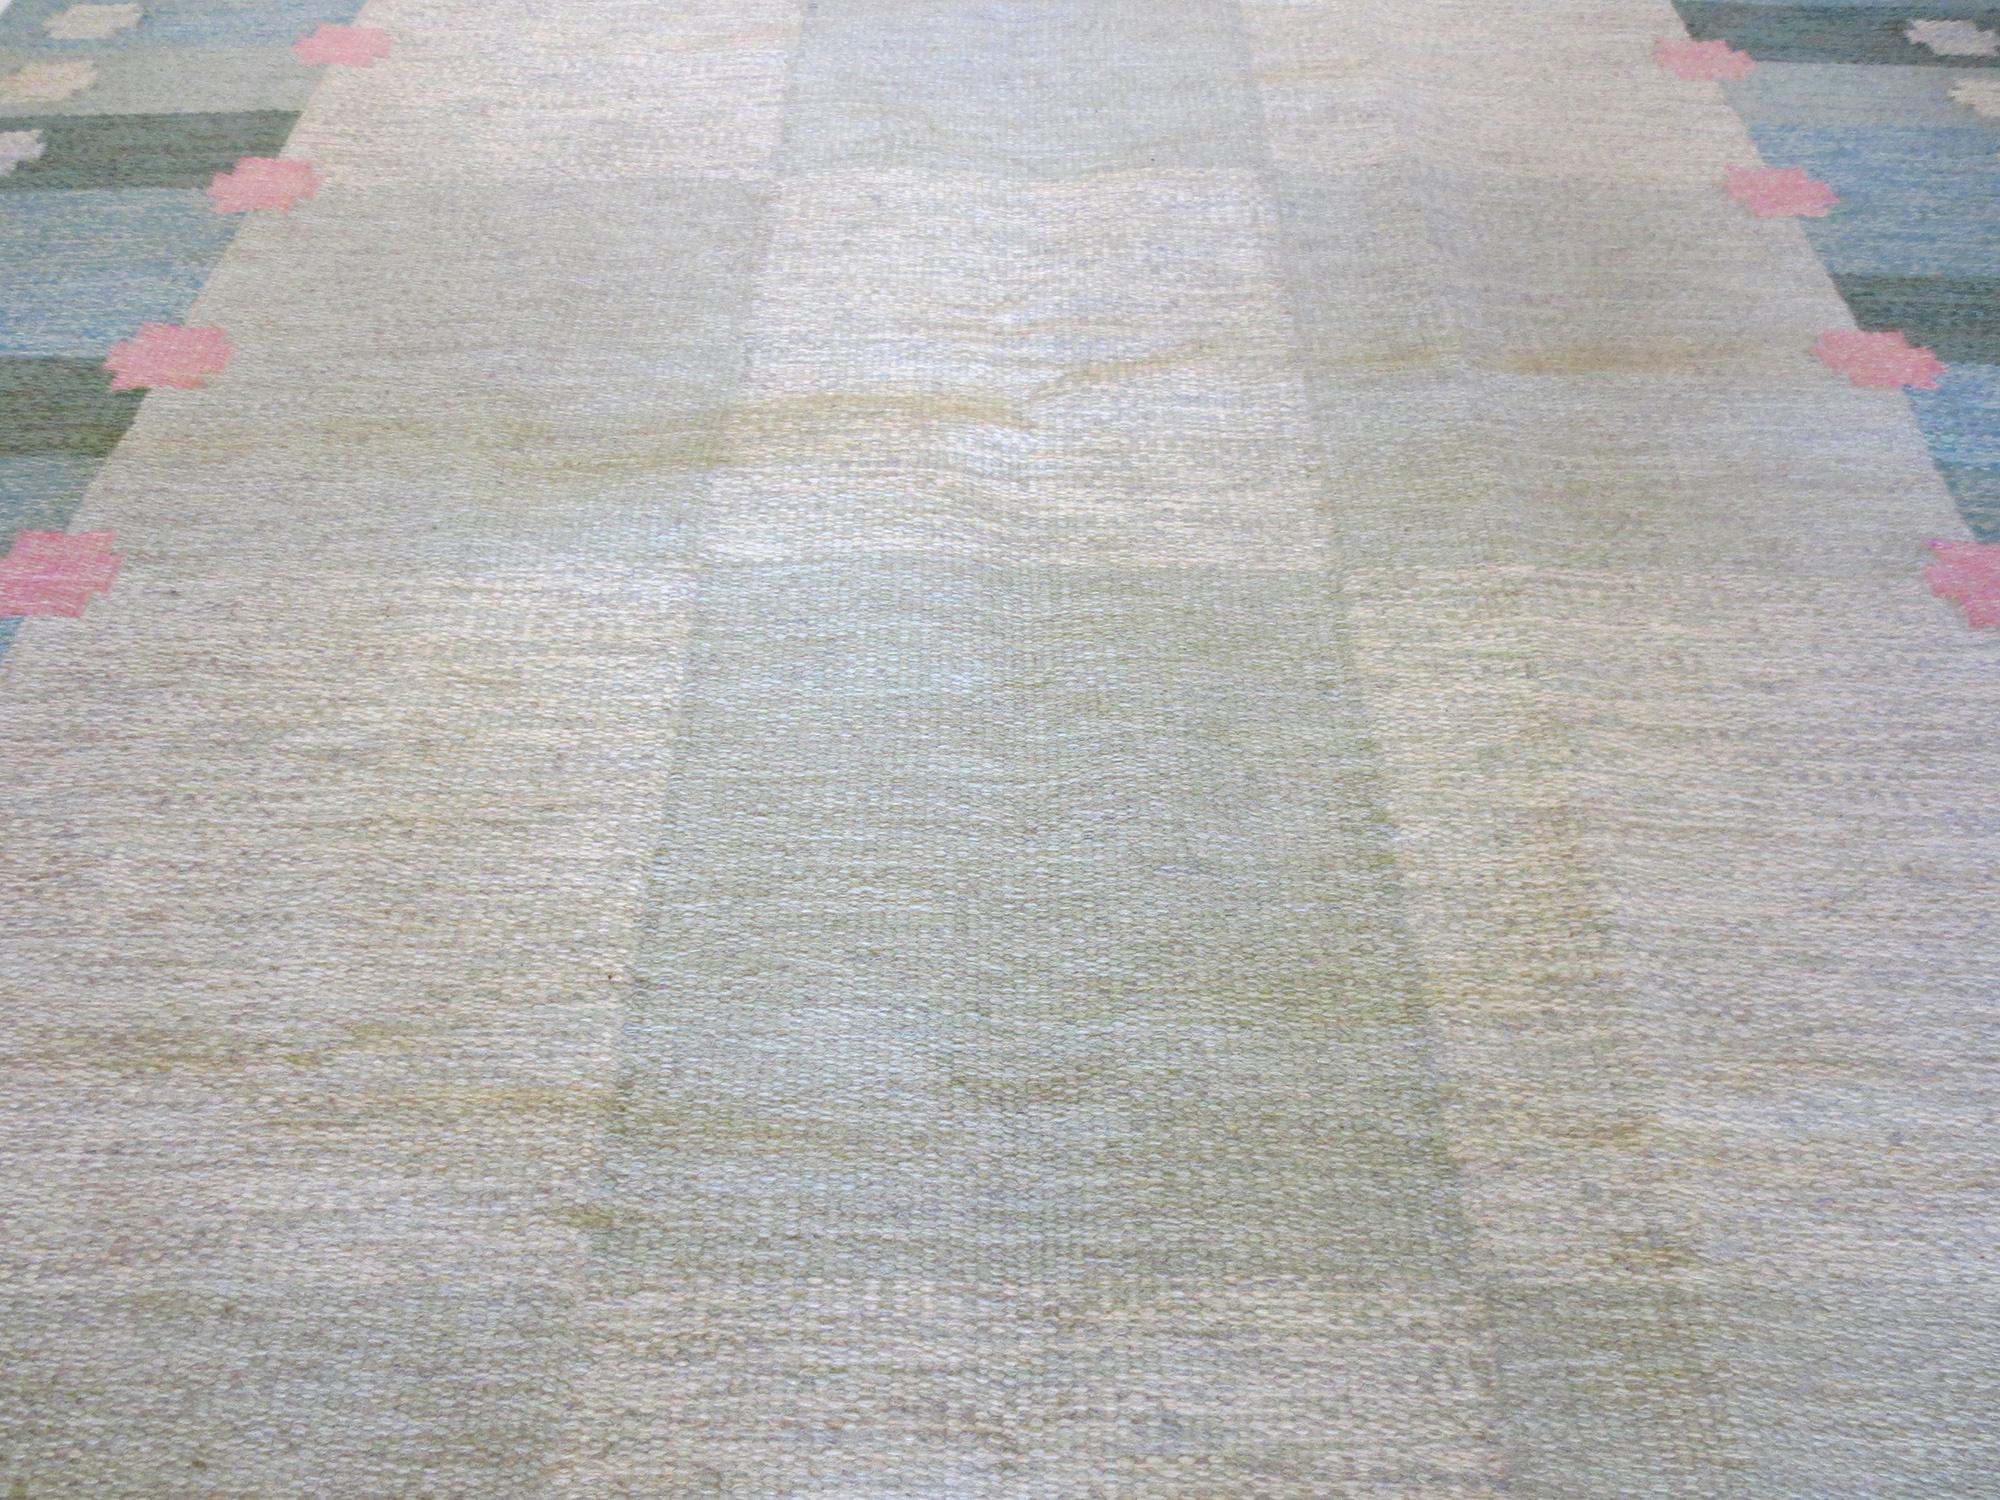 Dies ist ein schöner schwedischer Kelim-Teppich der Designerin Anna Joanna Angstrom aus der Mitte des 20. Jahrhunderts. Seine sanften Grün-, Blau- und Rosatöne rufen ein Gefühl der Ruhe hervor, während die vertikalen und horizontalen Elemente des